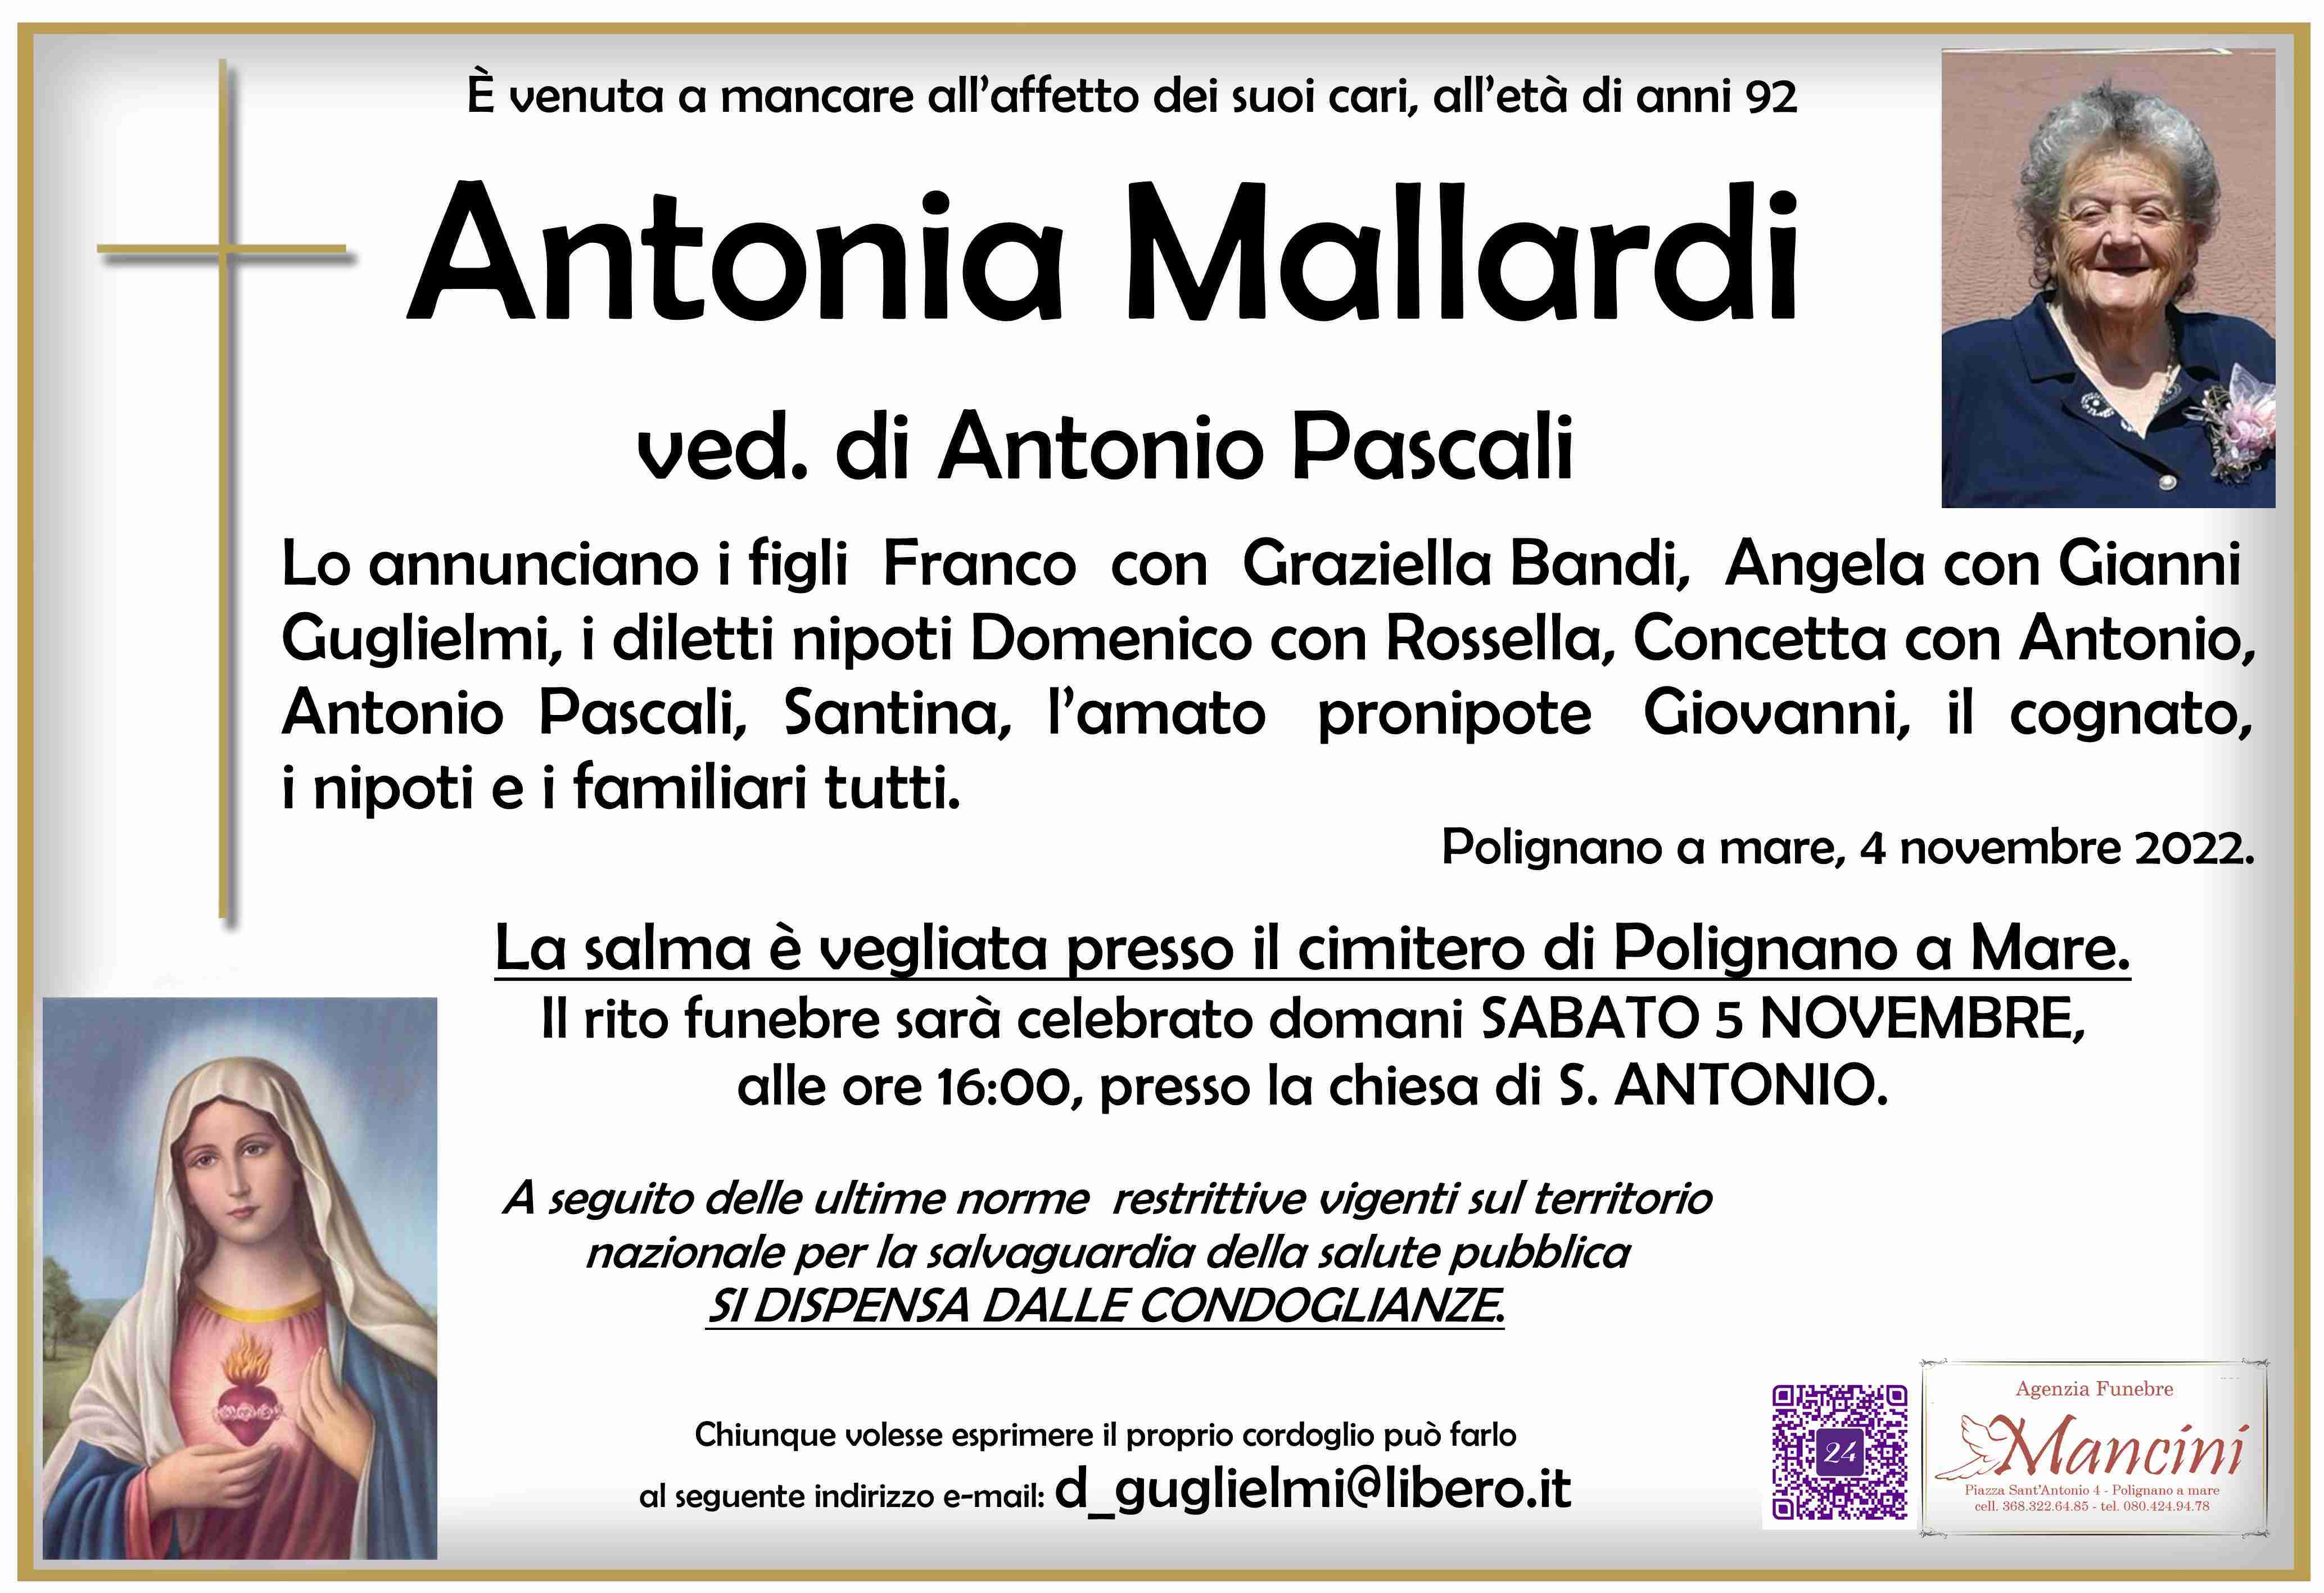 Antonia Mallardi